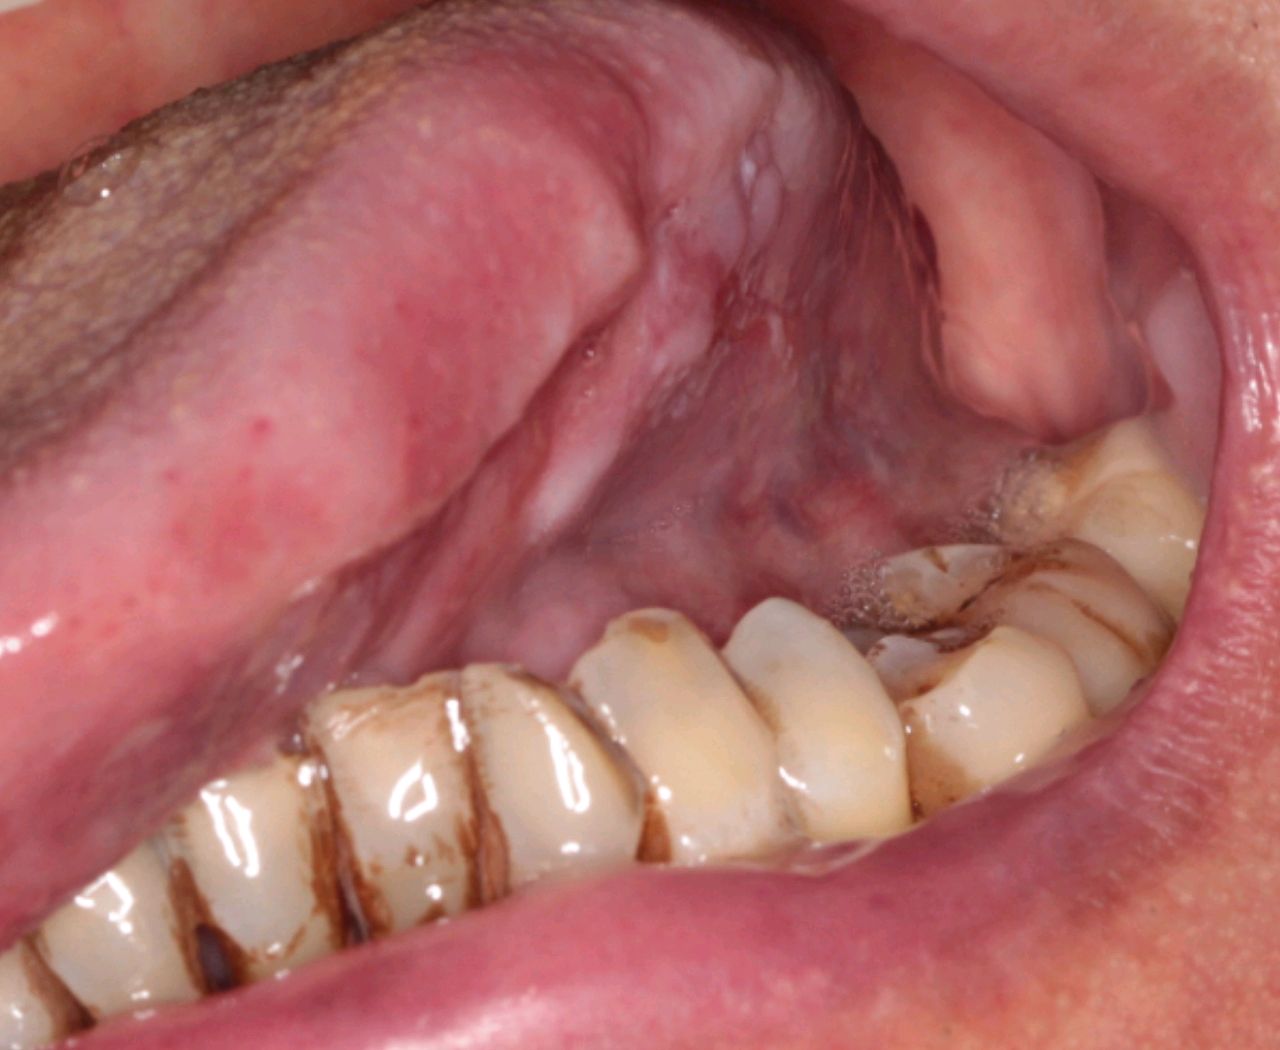 口腔癌是口腔颌面部最常见的恶性肿瘤,包括舌癌,牙龈癌,颊黏膜癌,腭